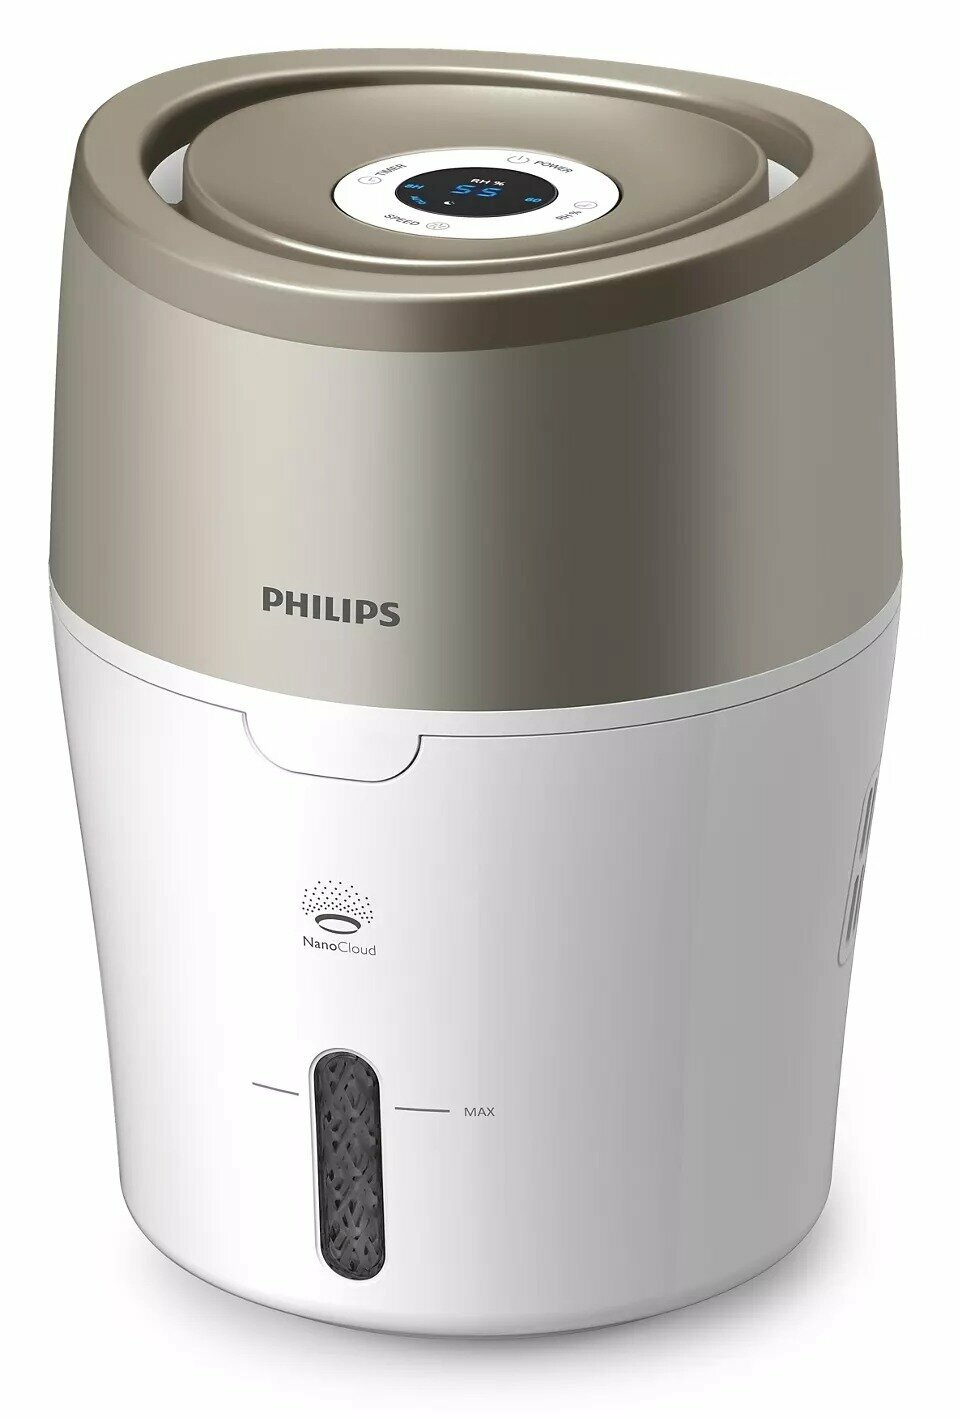 Увлажнитель воздуха с функцией ароматизации Philips HU4803/01, белый и металлик с розовым оттенком